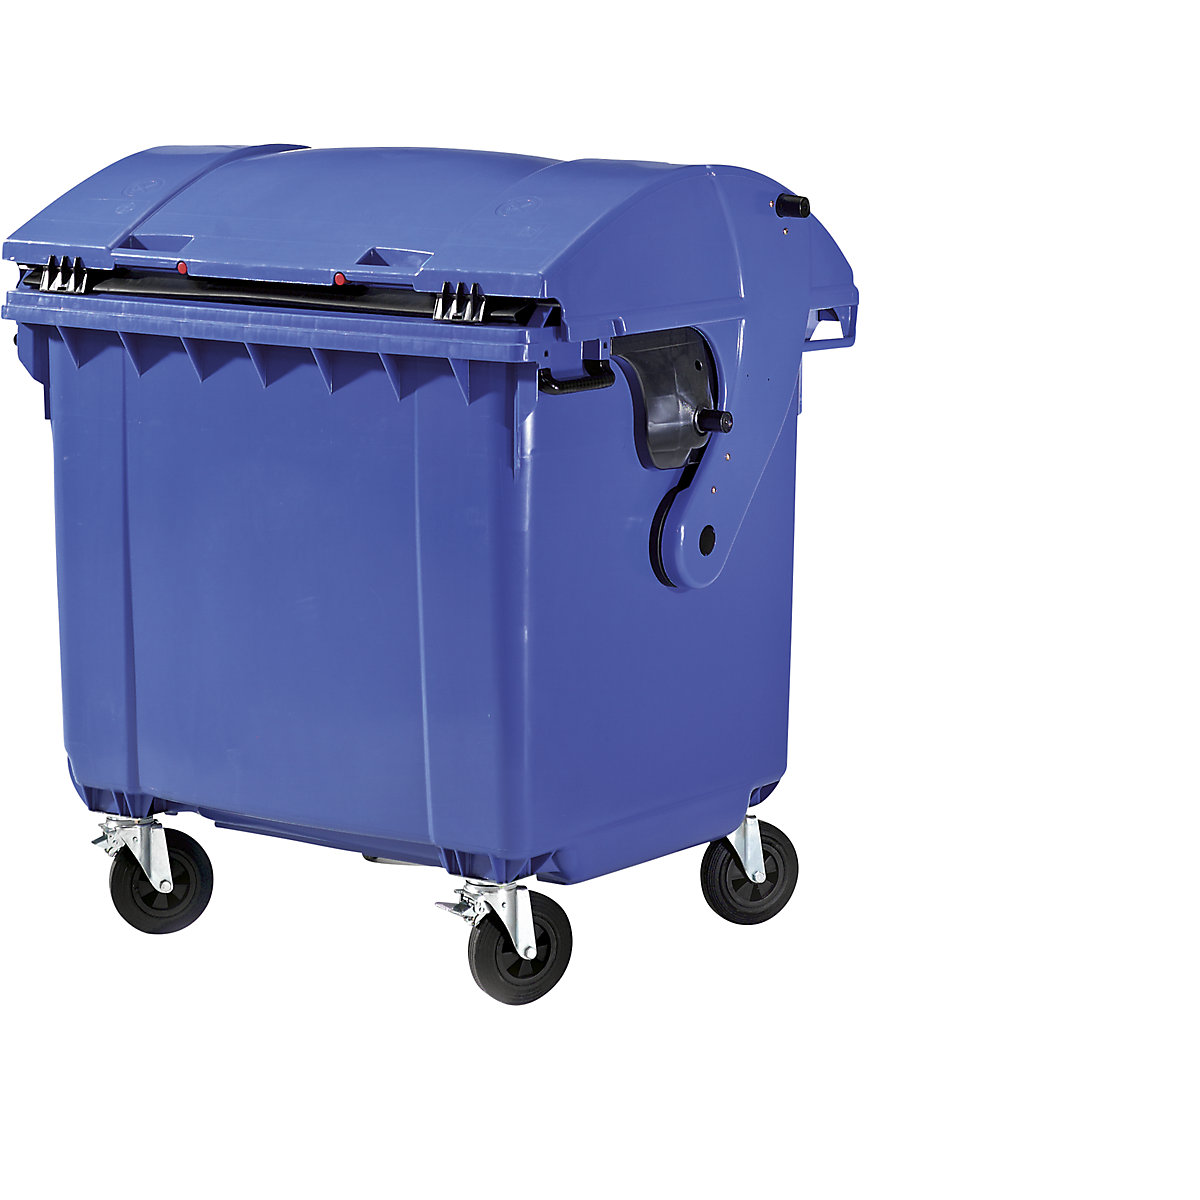 Afvalcontainer van kunststof, DIN EN 840, Inhoud 1100 l, h x b x d = 1360 x 1465 x 1100 mm, schuifdeksel, beveiliging voor kinderen, blauw-5